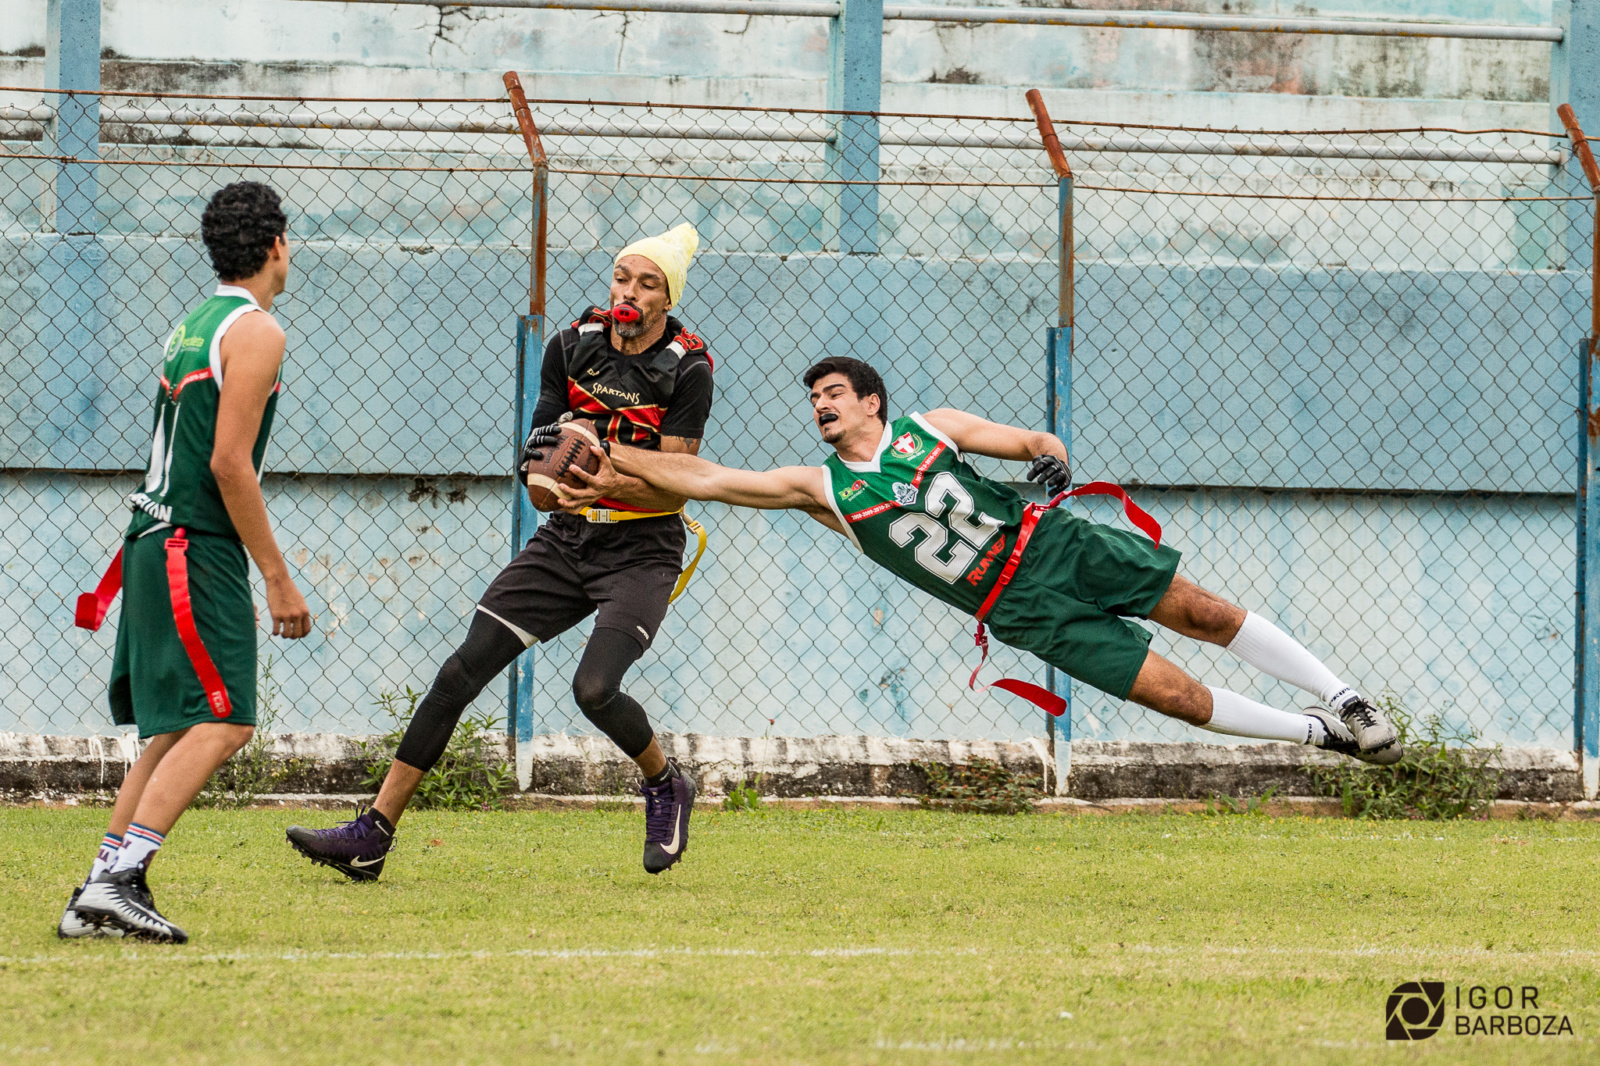 Conheça o flag, modalidade derivada do futebol americano e praticada em  Florianópolis